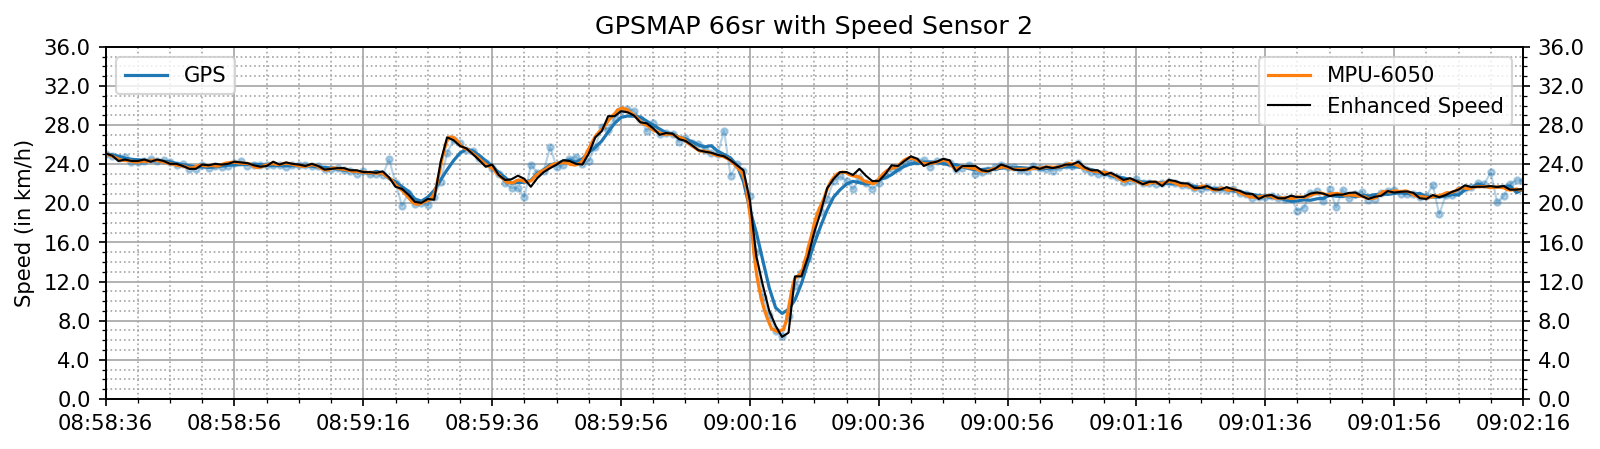 enhanced_speed_spd_crossing.png